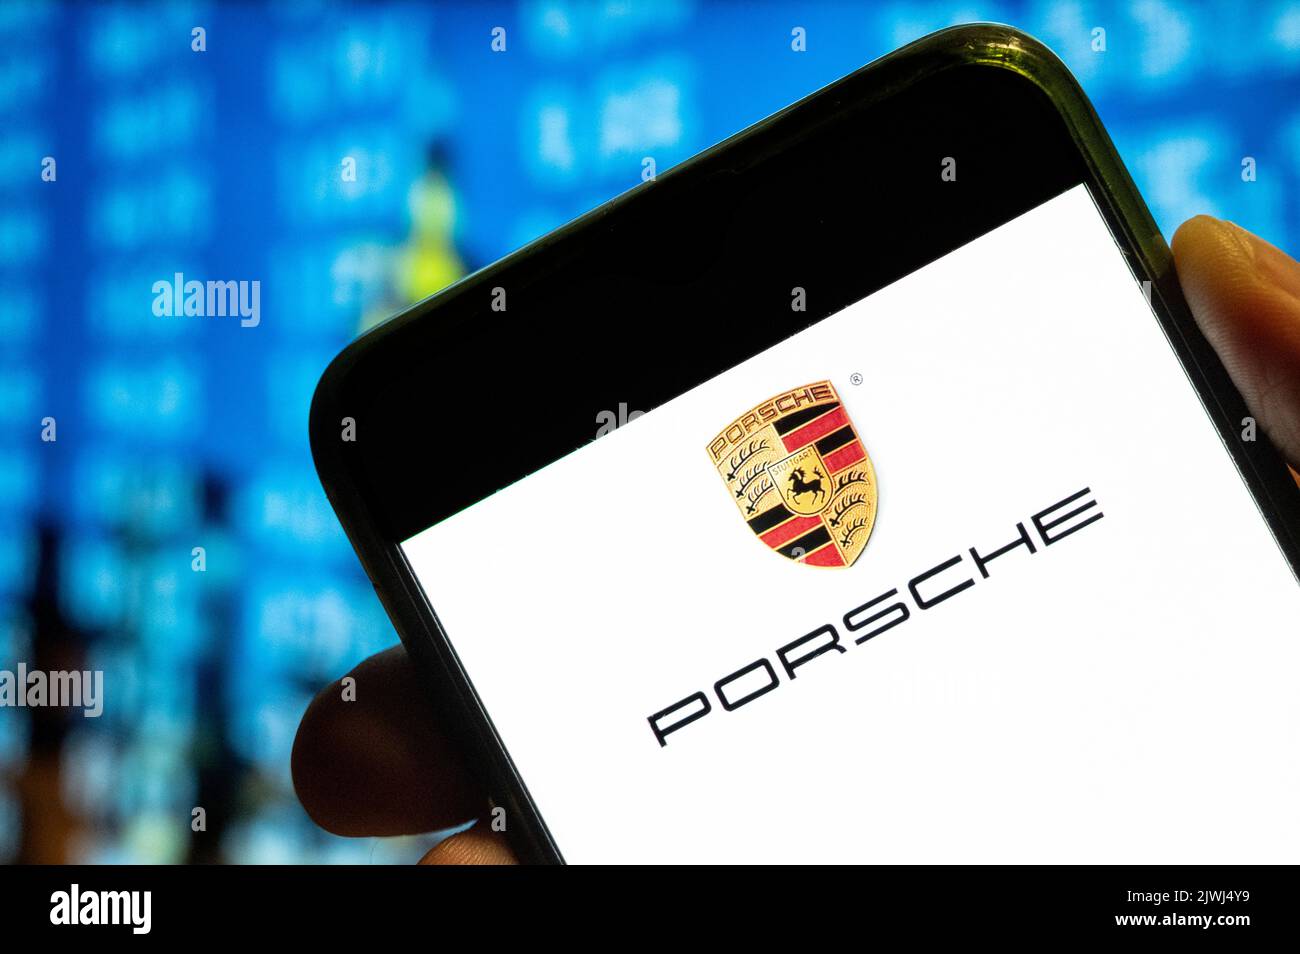 In questa foto, sullo schermo dello smartphone viene visualizzato il logo Porsche dell'azienda tedesca di lusso specializzata in veicoli sportivi. Foto Stock